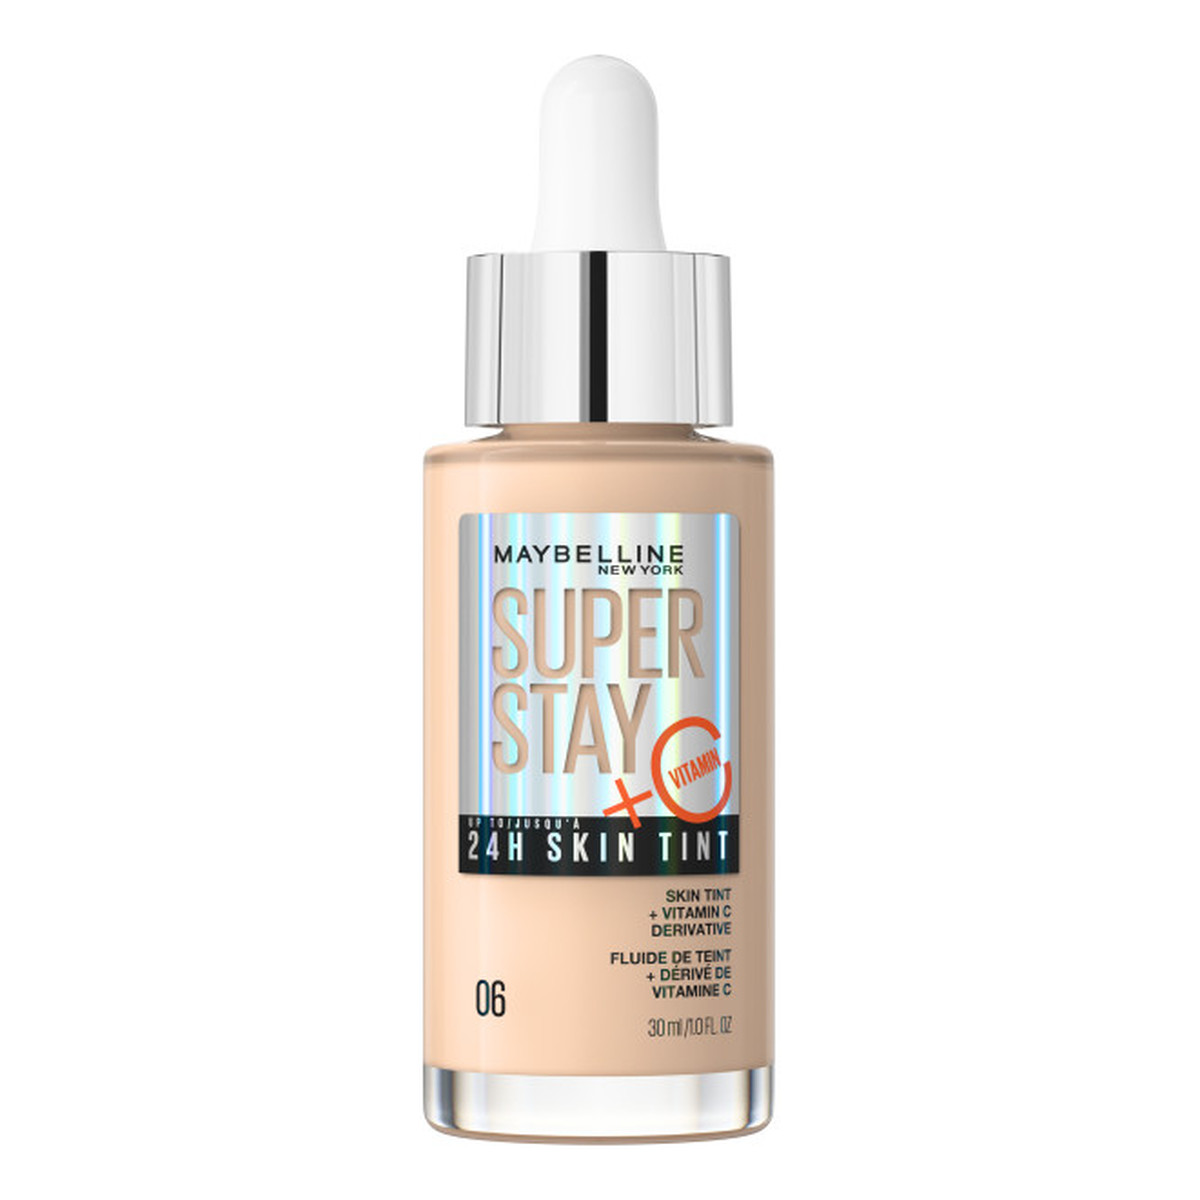 Maybelline Super Stay 24H Skin Tint długotrwały podkład rozświetlający z witaminą C 30ml